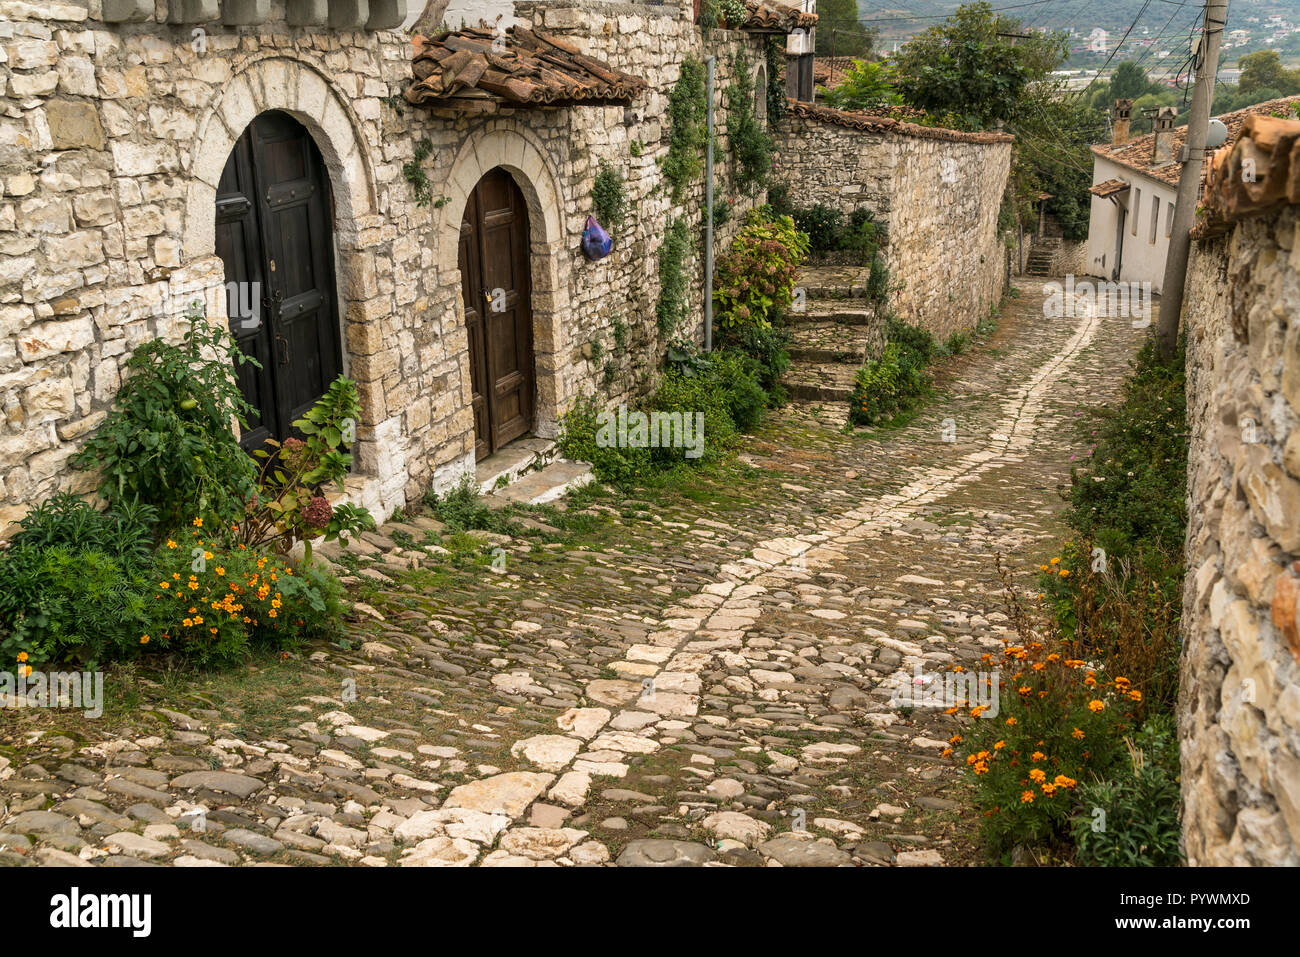 Kopfsteinpflaster Gasse mit osmanischer Architektur,  Berat, Albanien, Europa |  cobble stone street with Ottoman Architecture, Berat, Albania, Europe Stock Photo